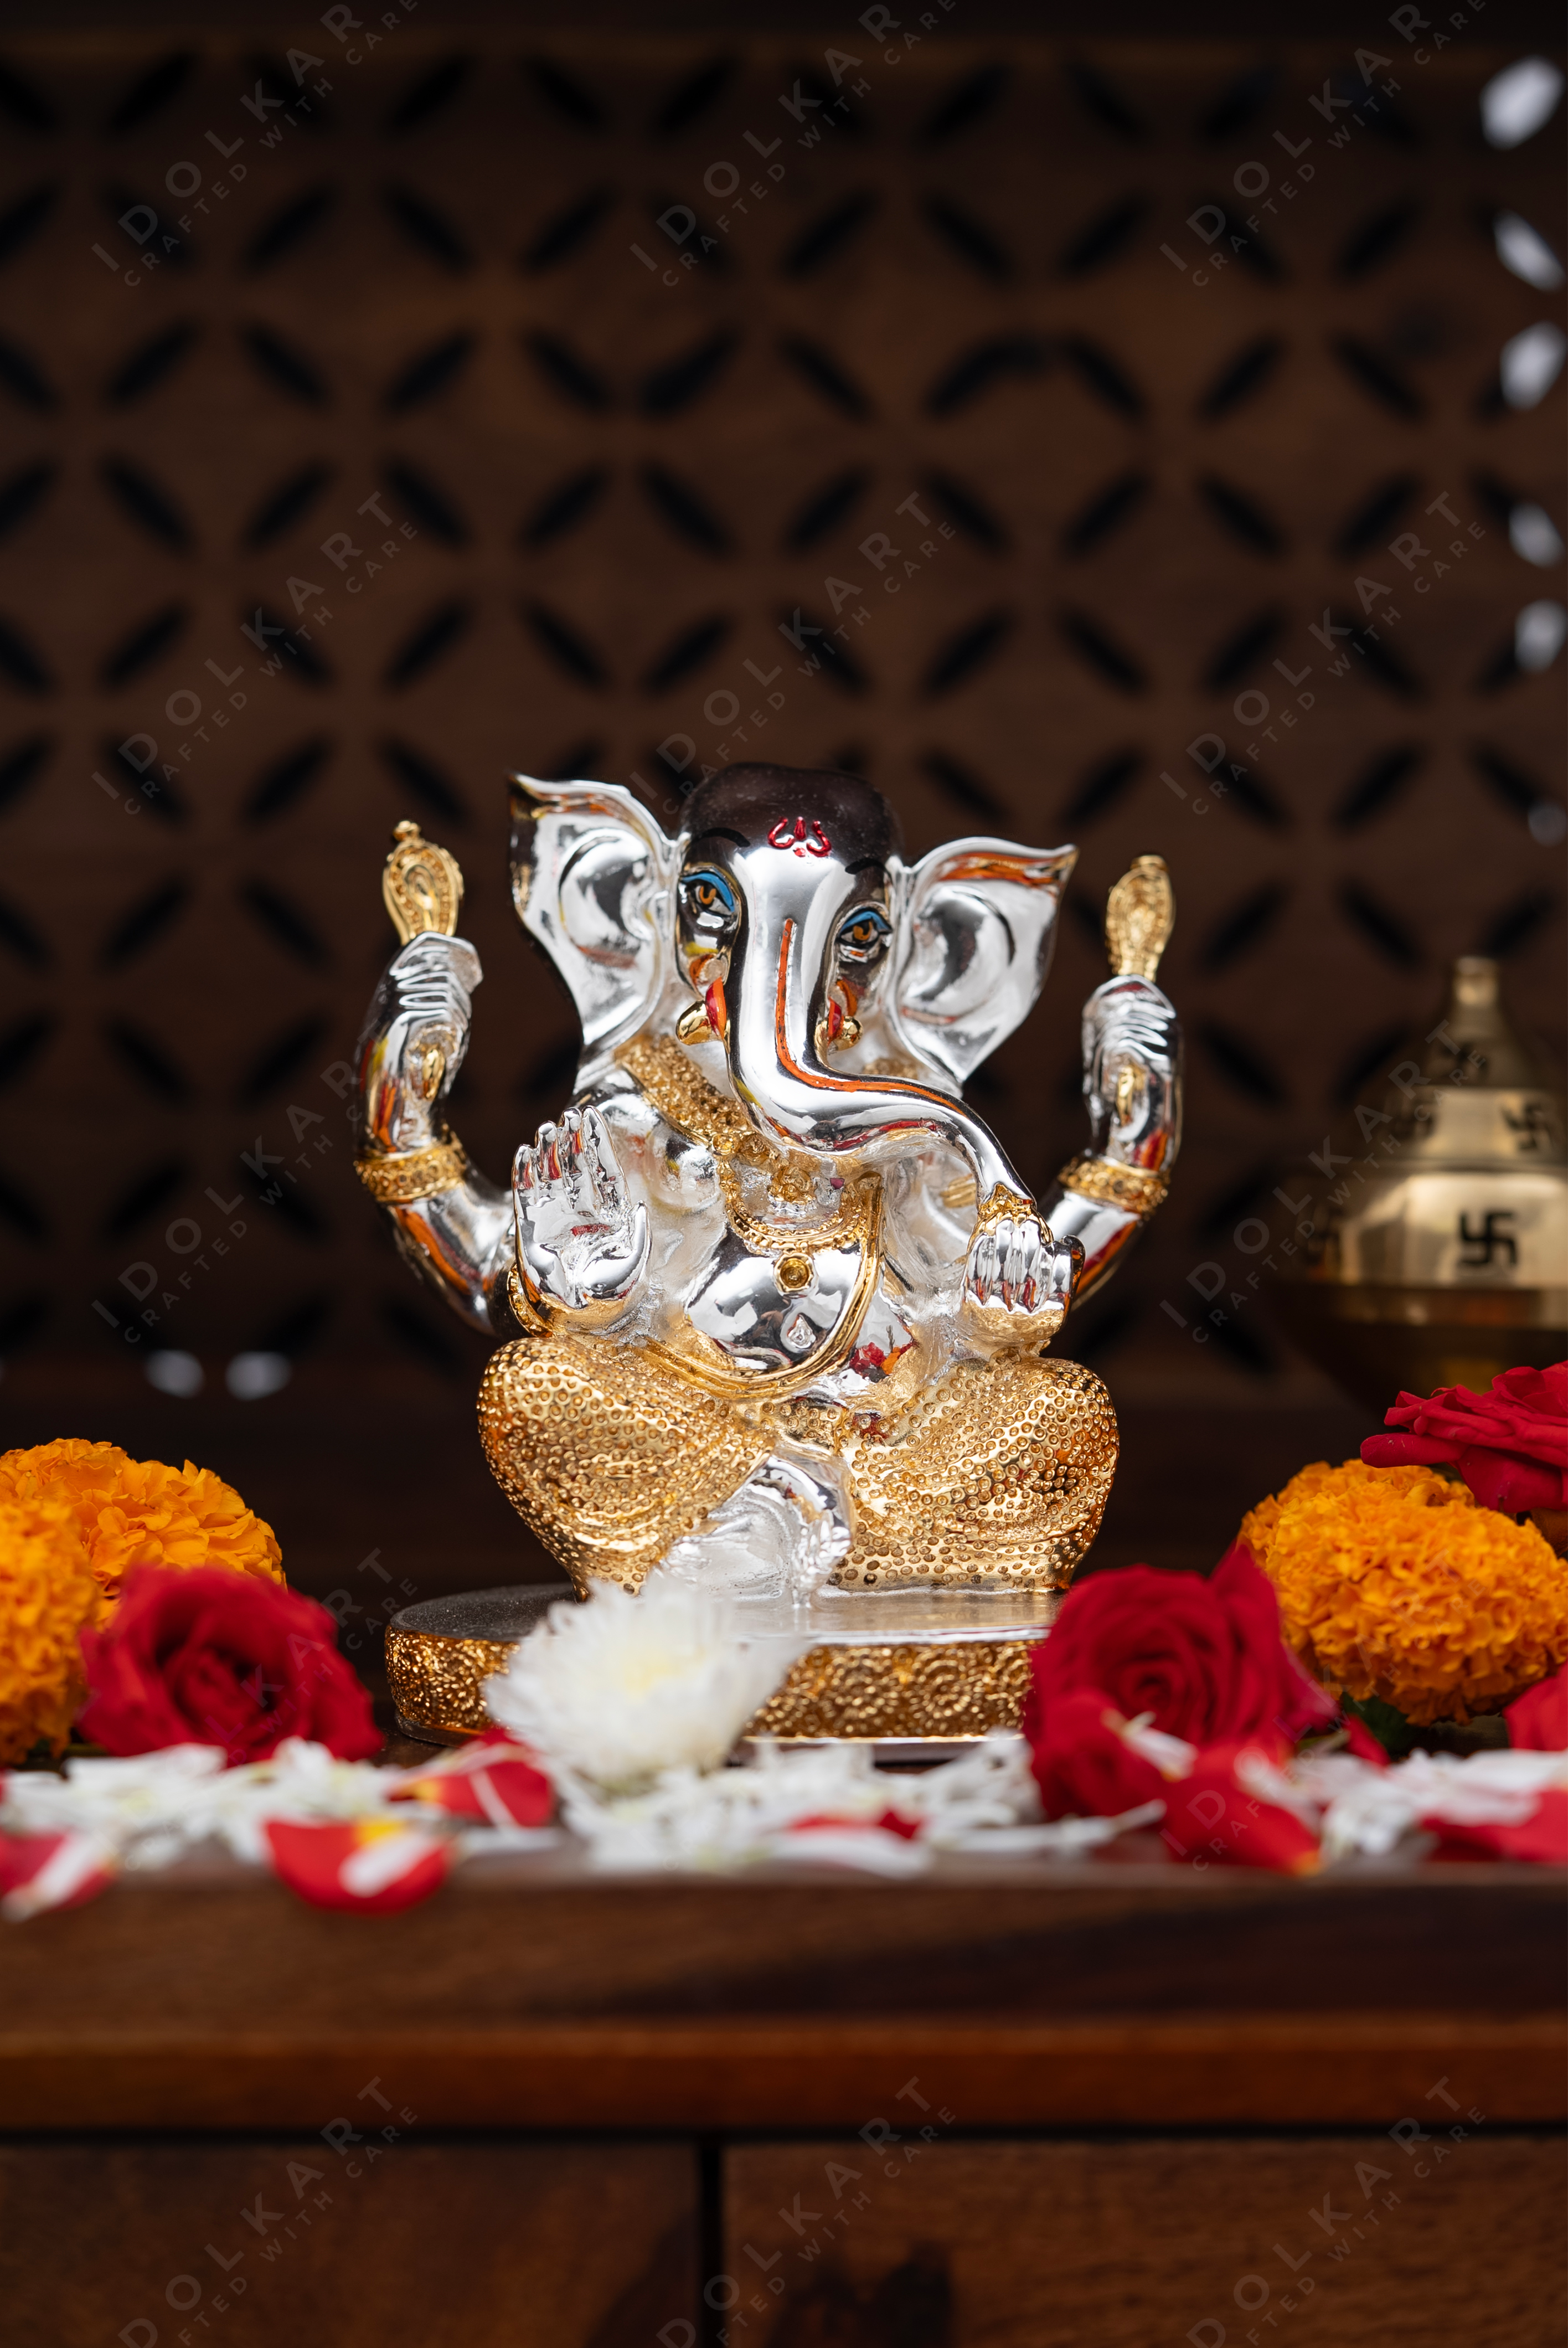 Buddhividhata Ganesha idol